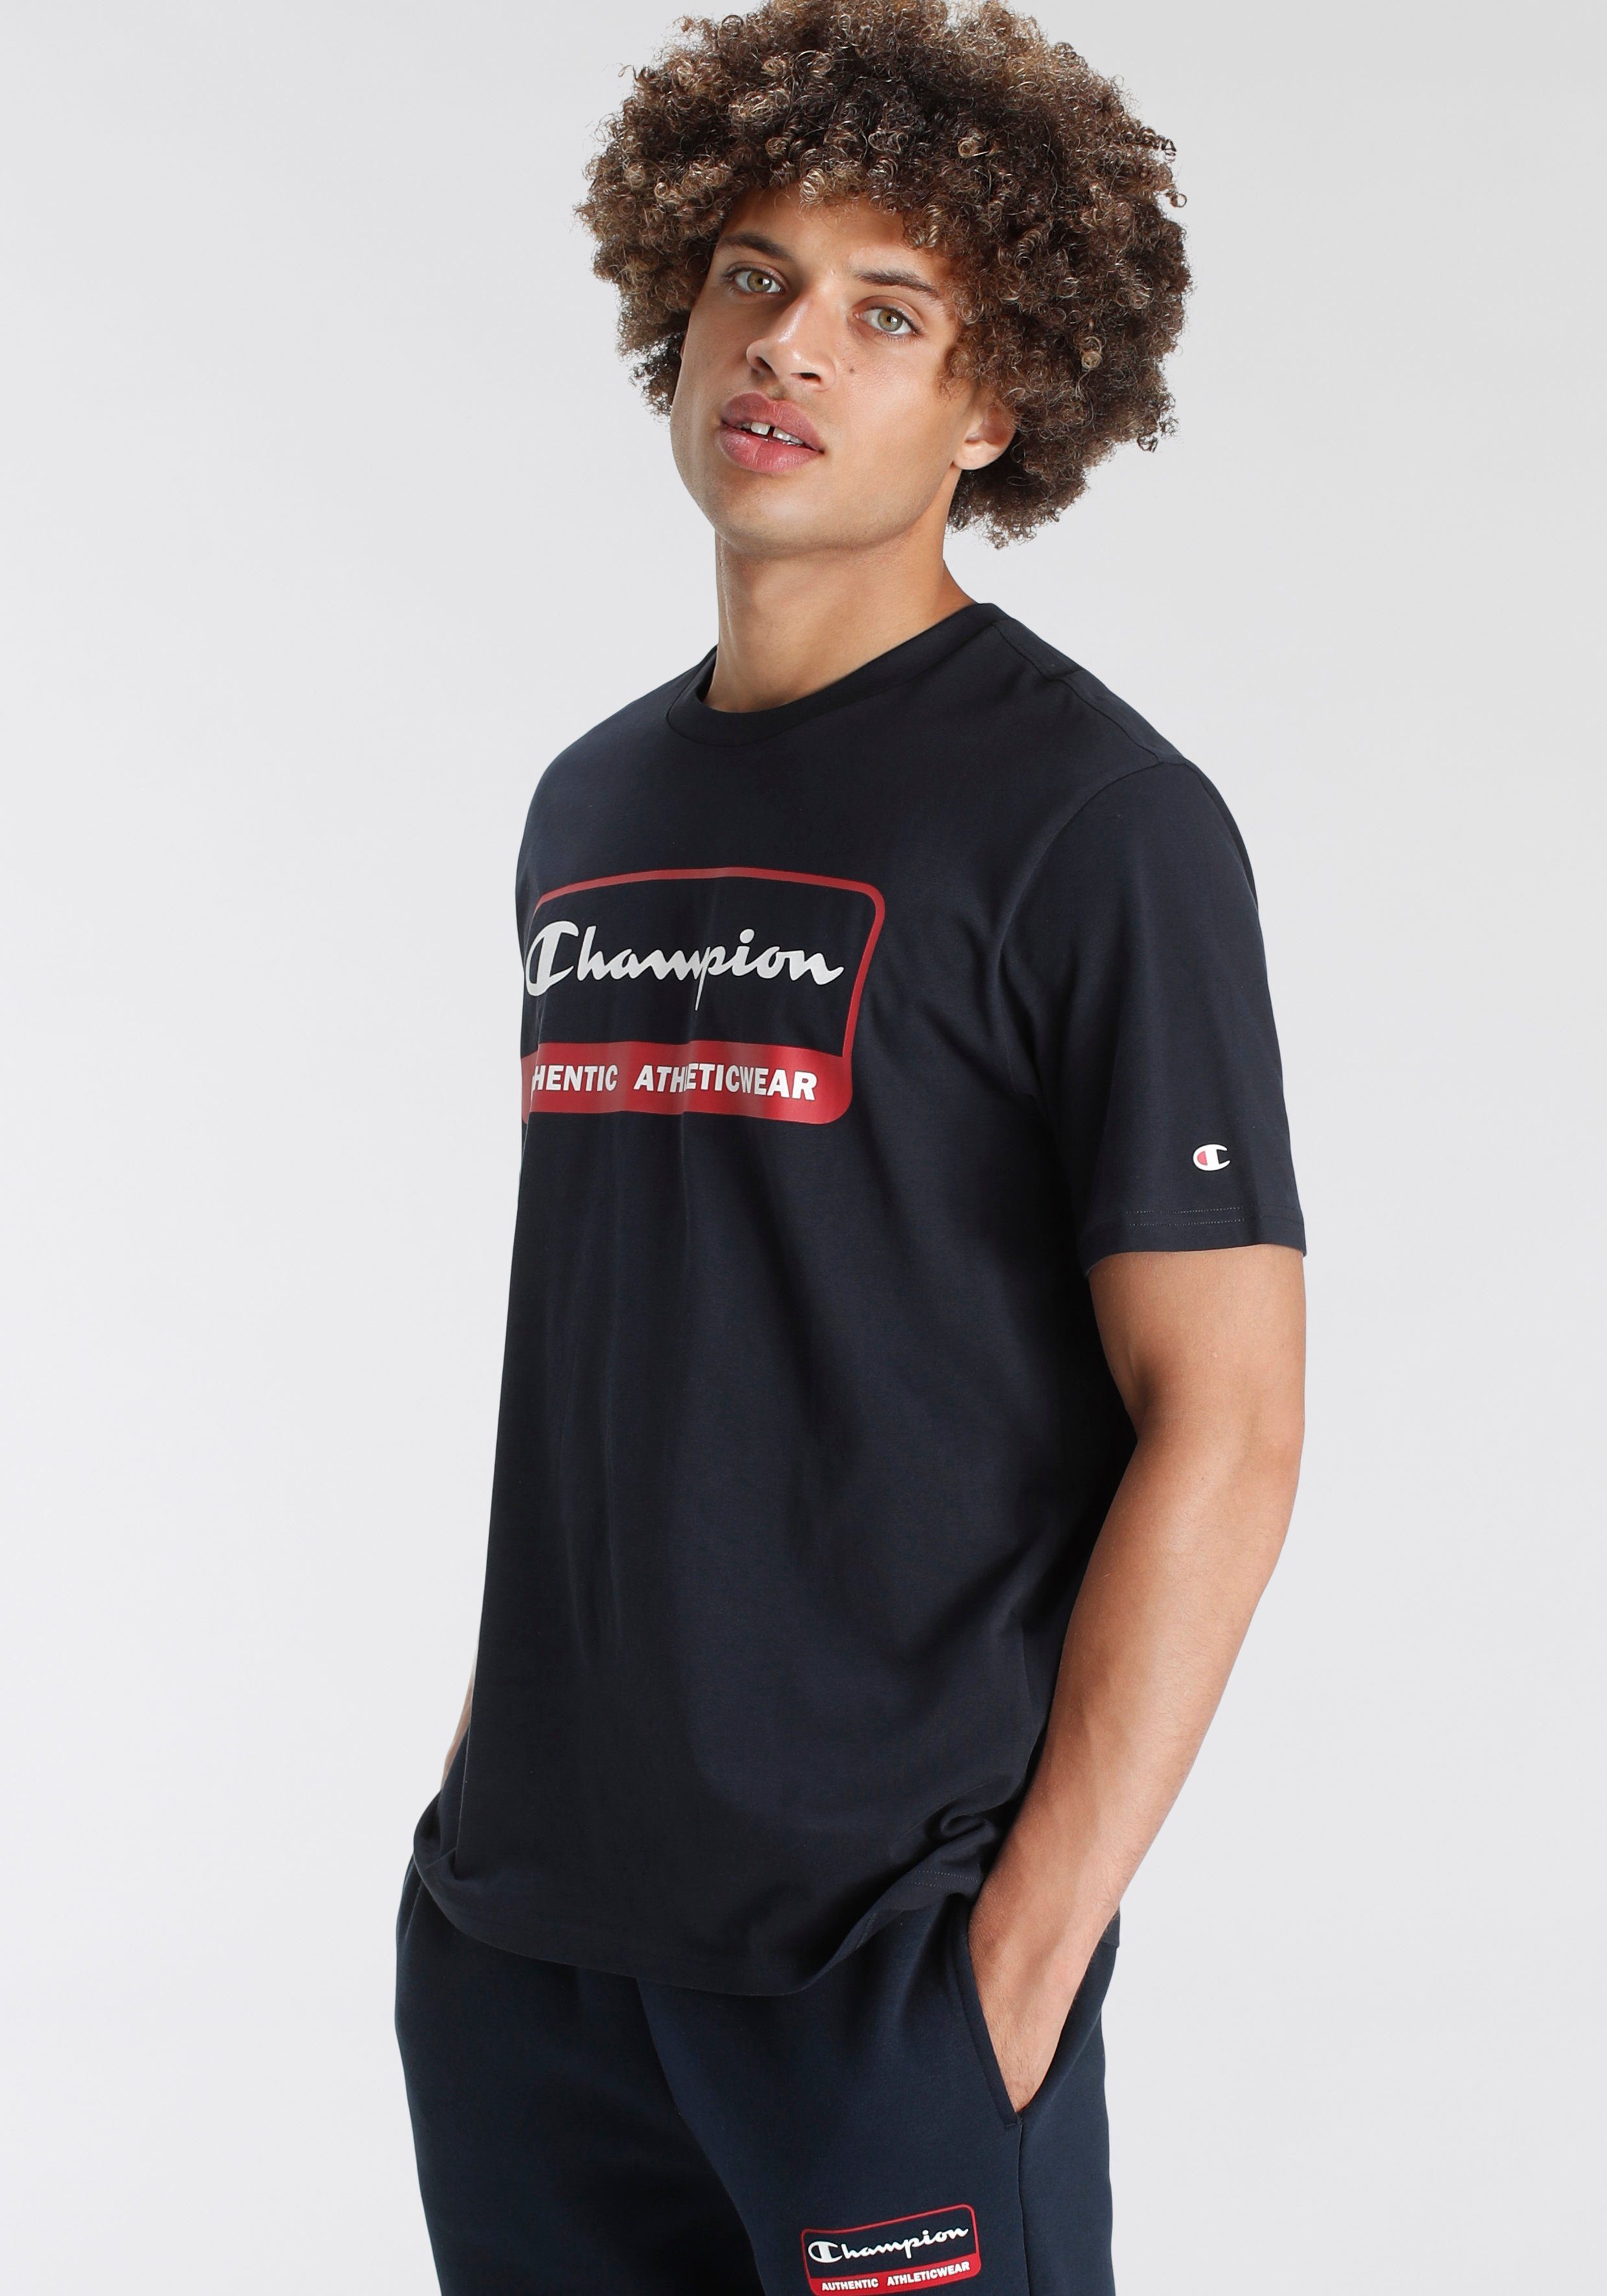 T-Shirt Graphic Shop Tragegefühl Bewegungsfreiheit T-Shirt, Champion Crewneck und angenehmeres Ein